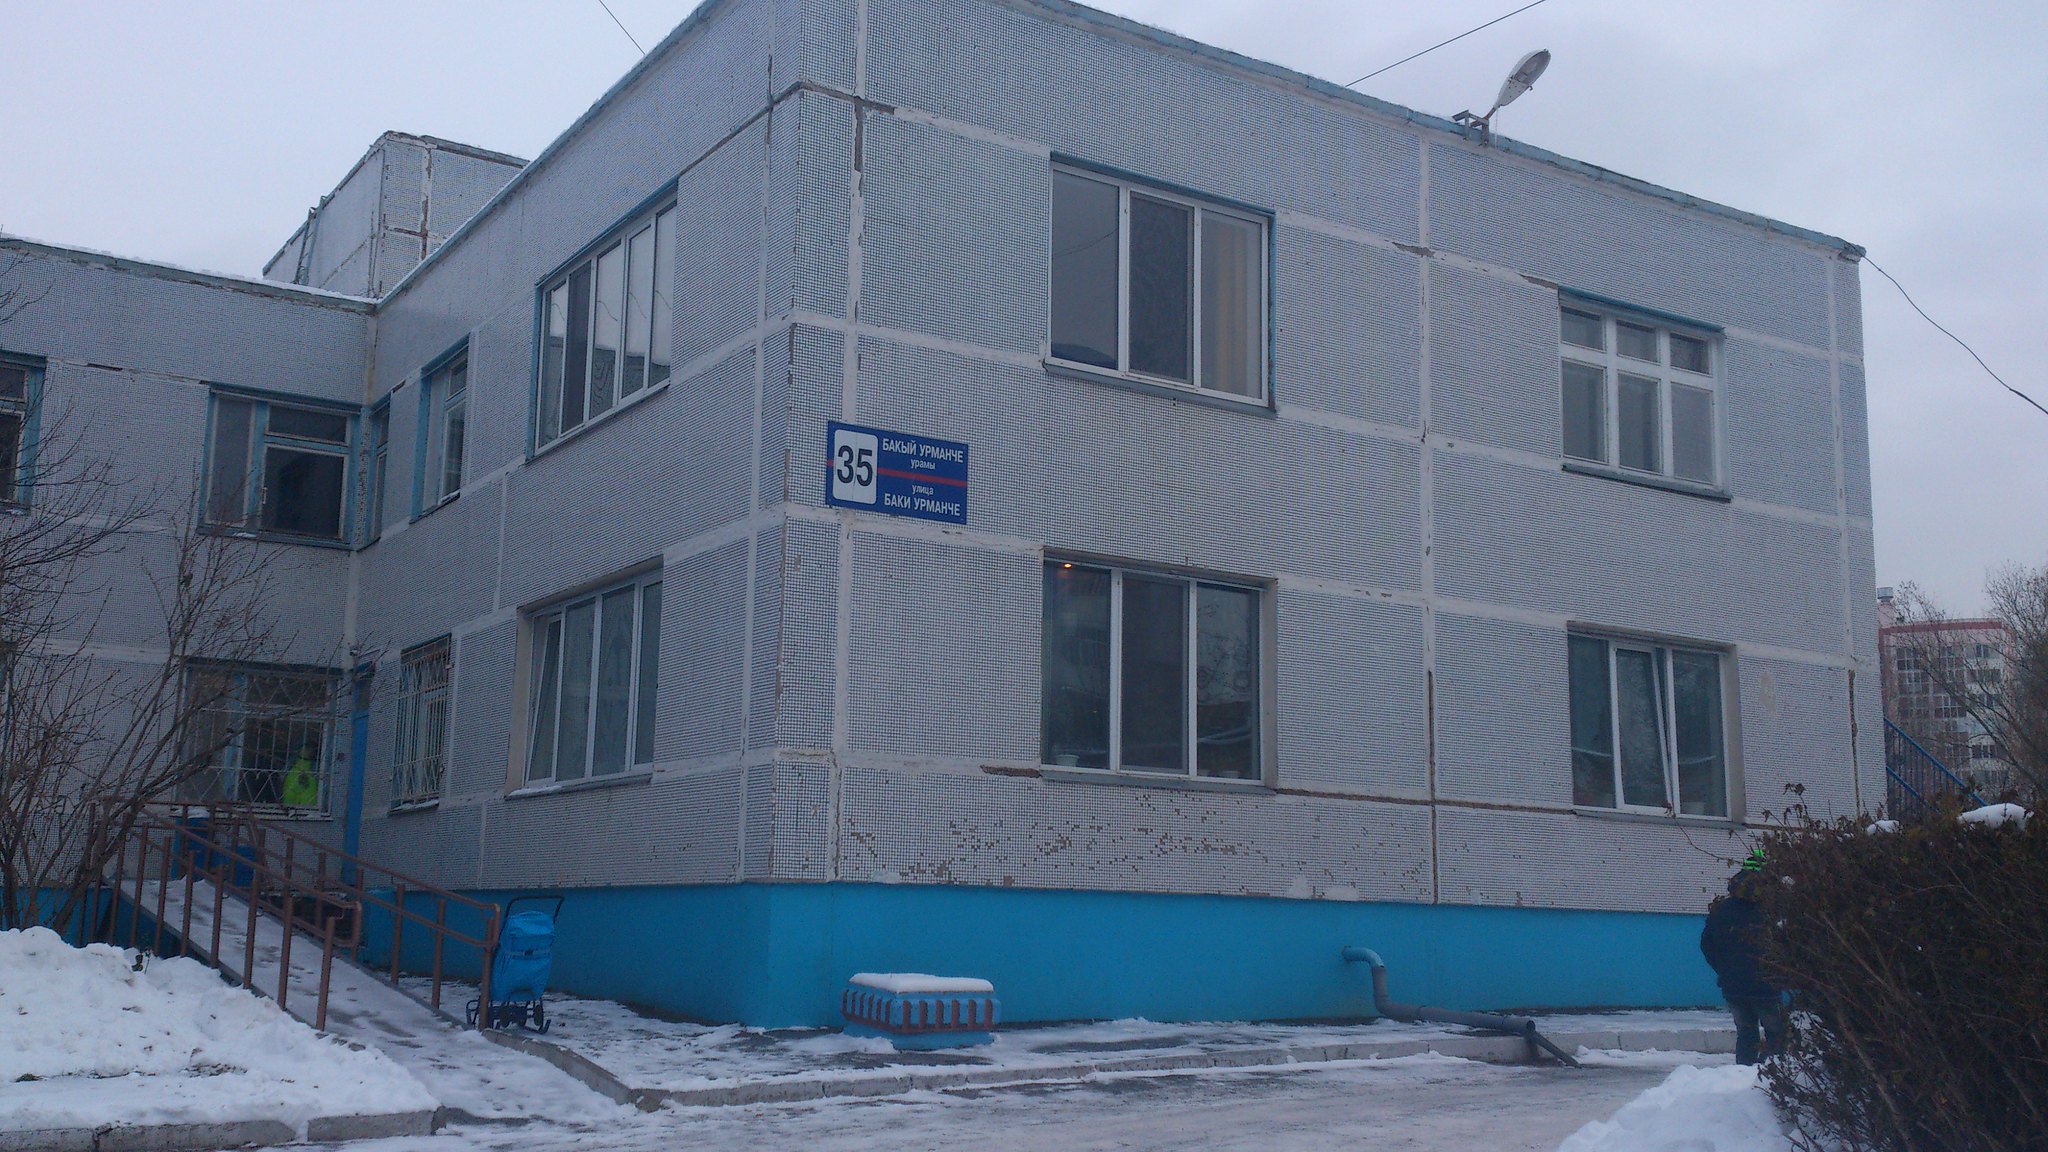 Реабилитационный центр *Надежда*,г.Нижнекамск. 